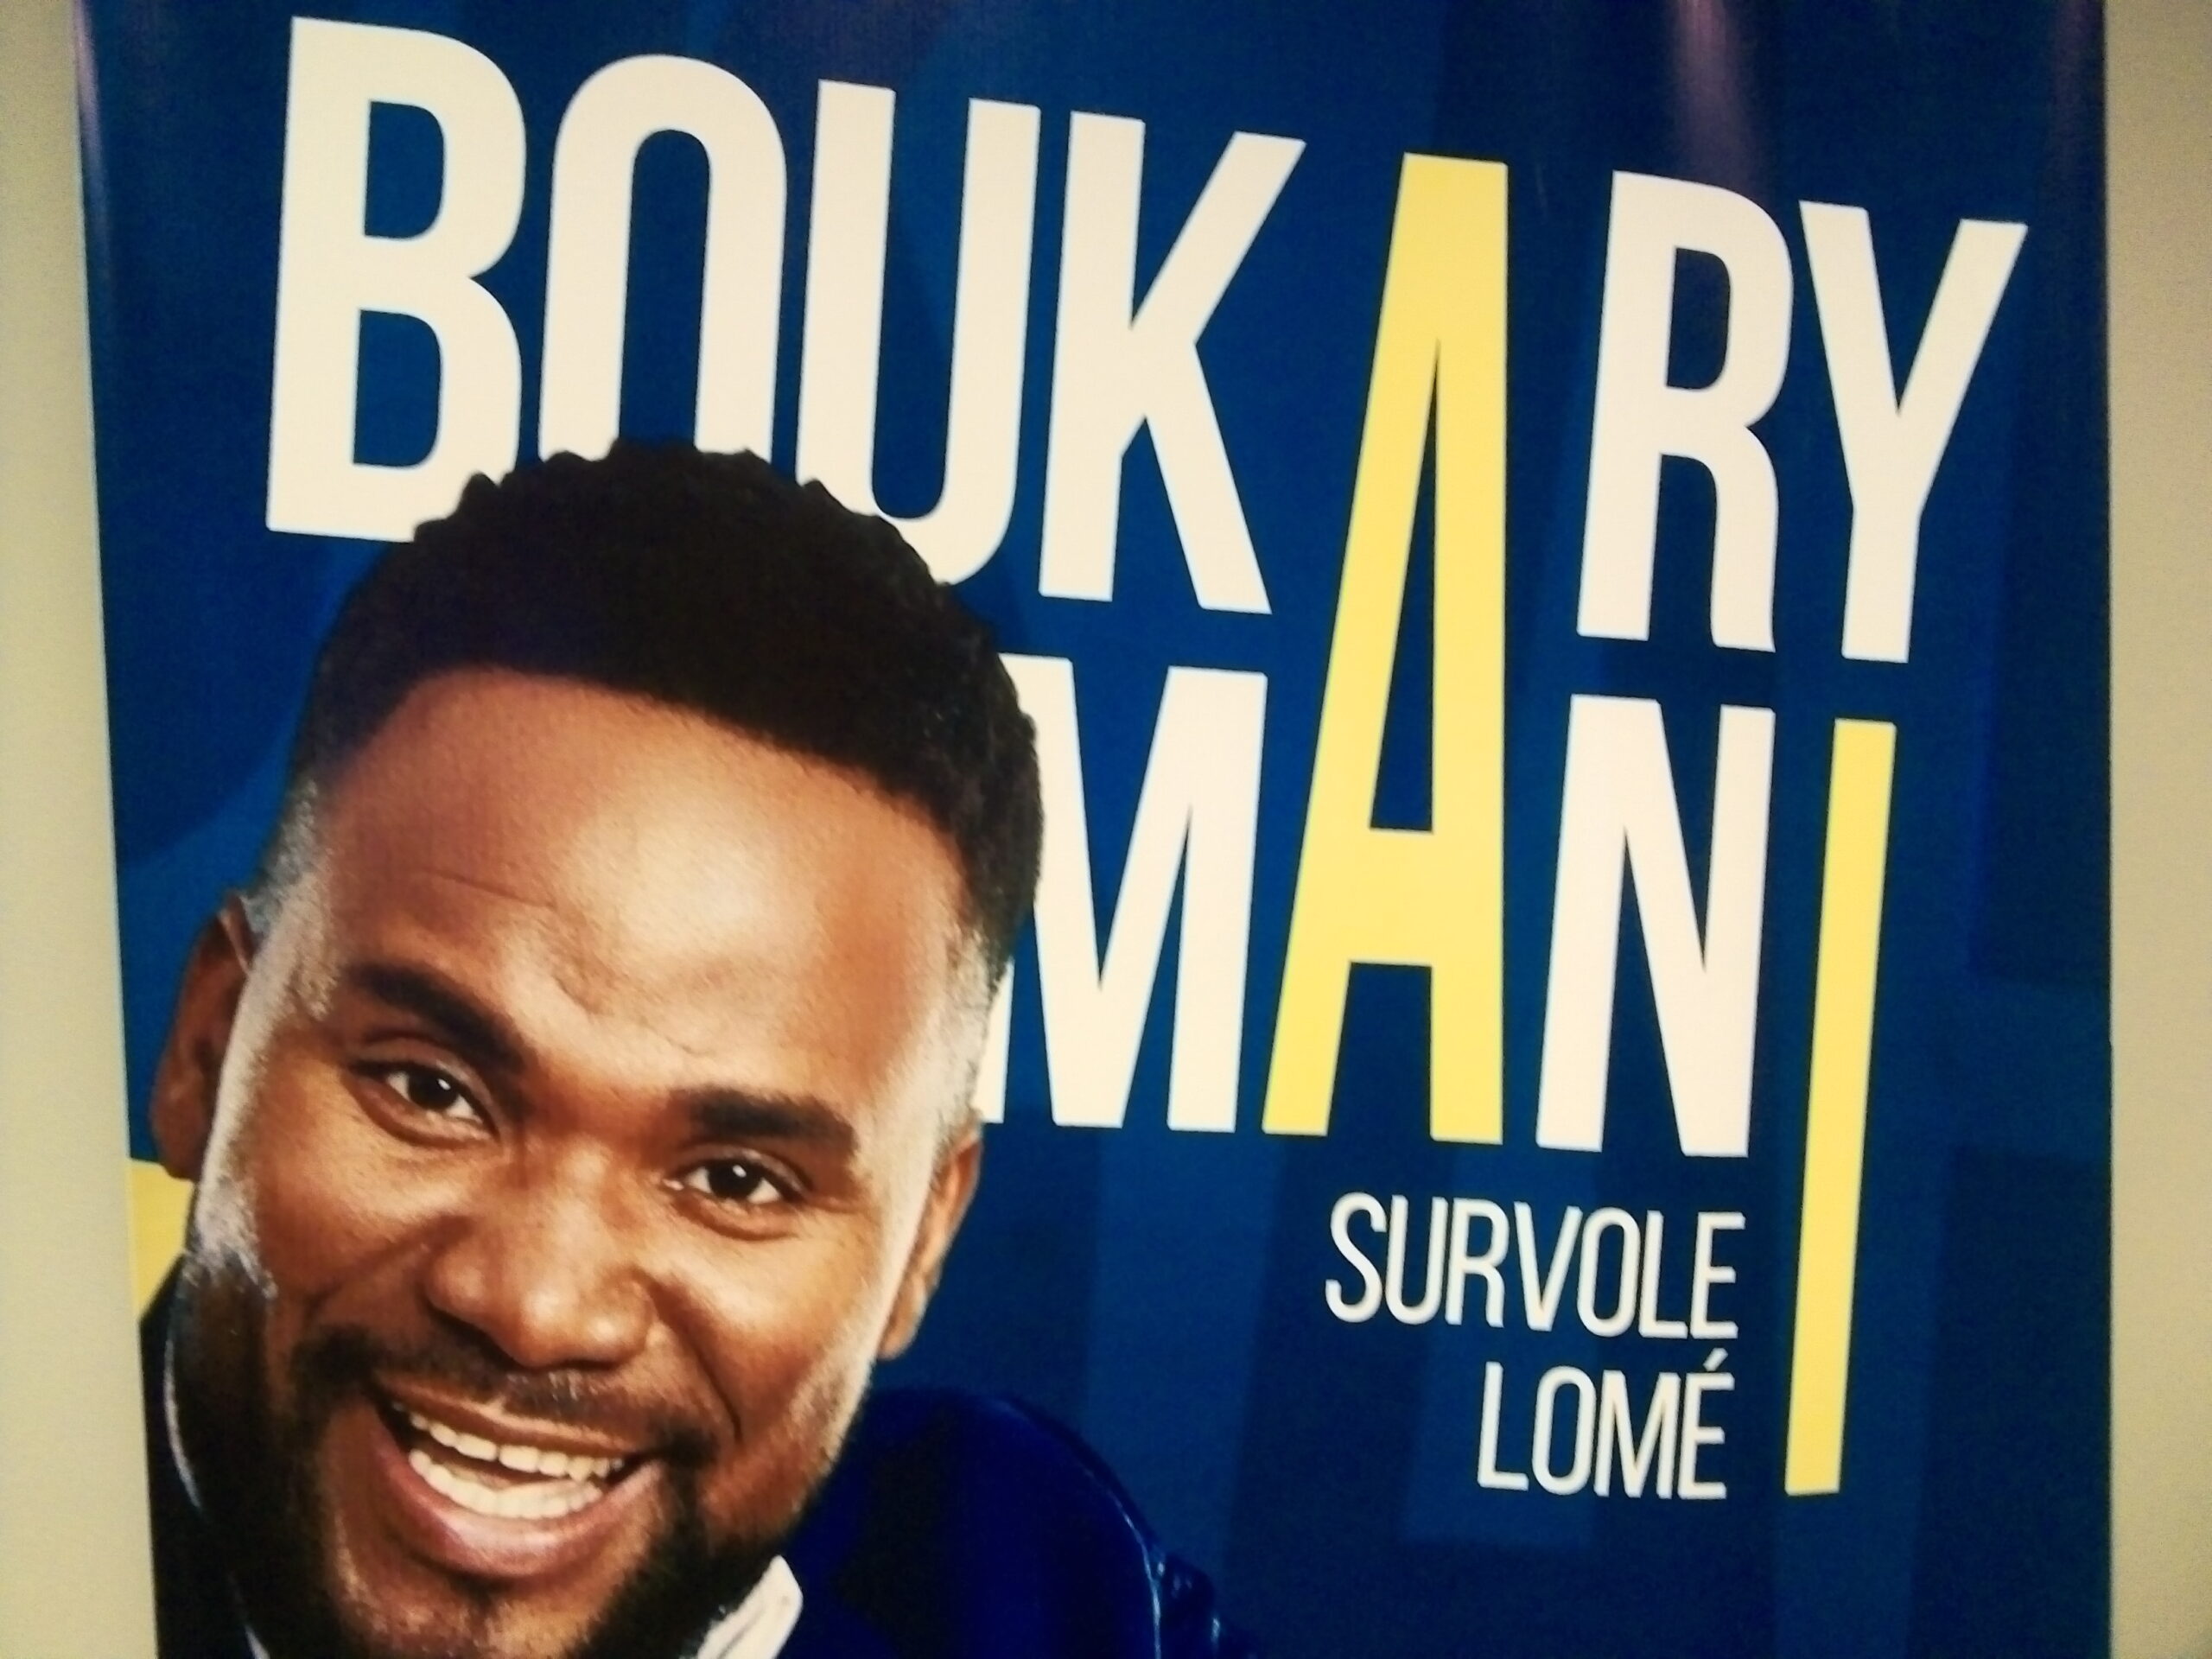 Togo/monde du spectacle : l’humoriste Boukary Man attendu à Lomé en septembre prochain